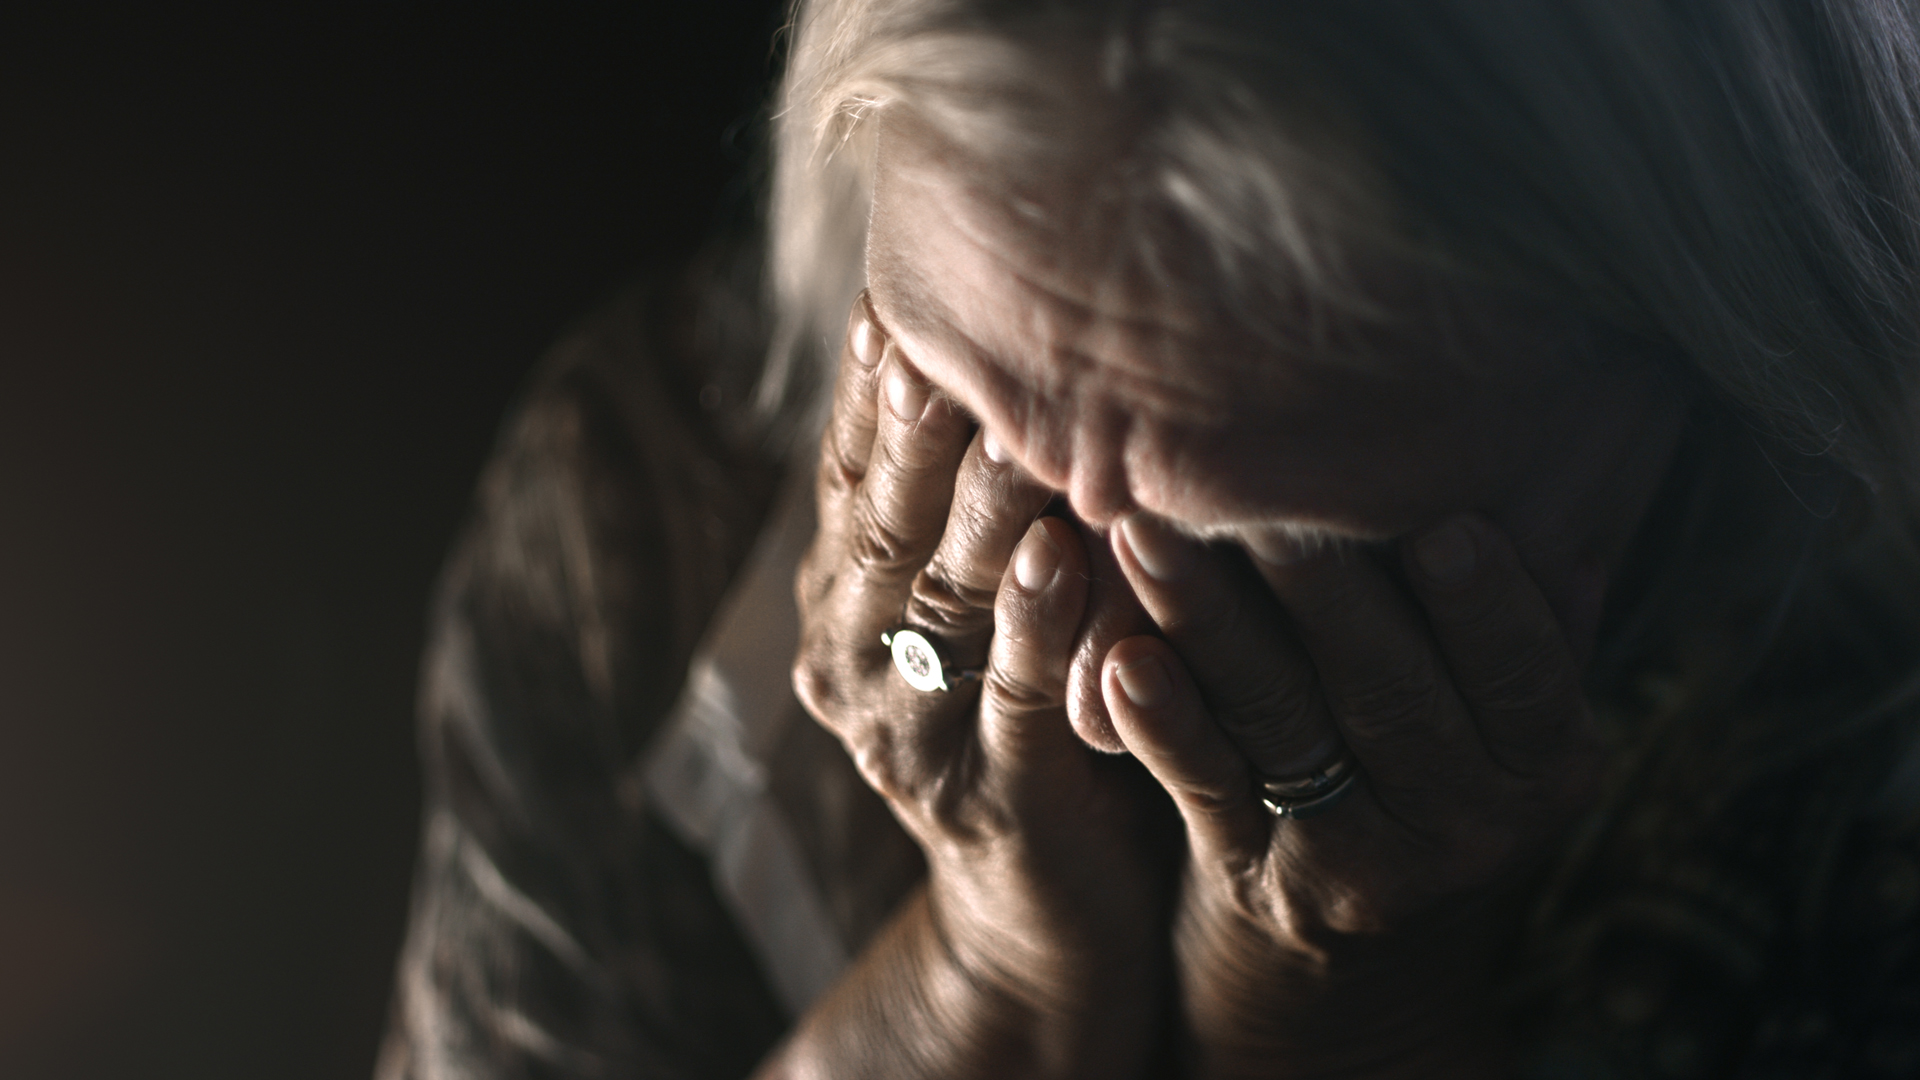 depressed elderly woman.jpg